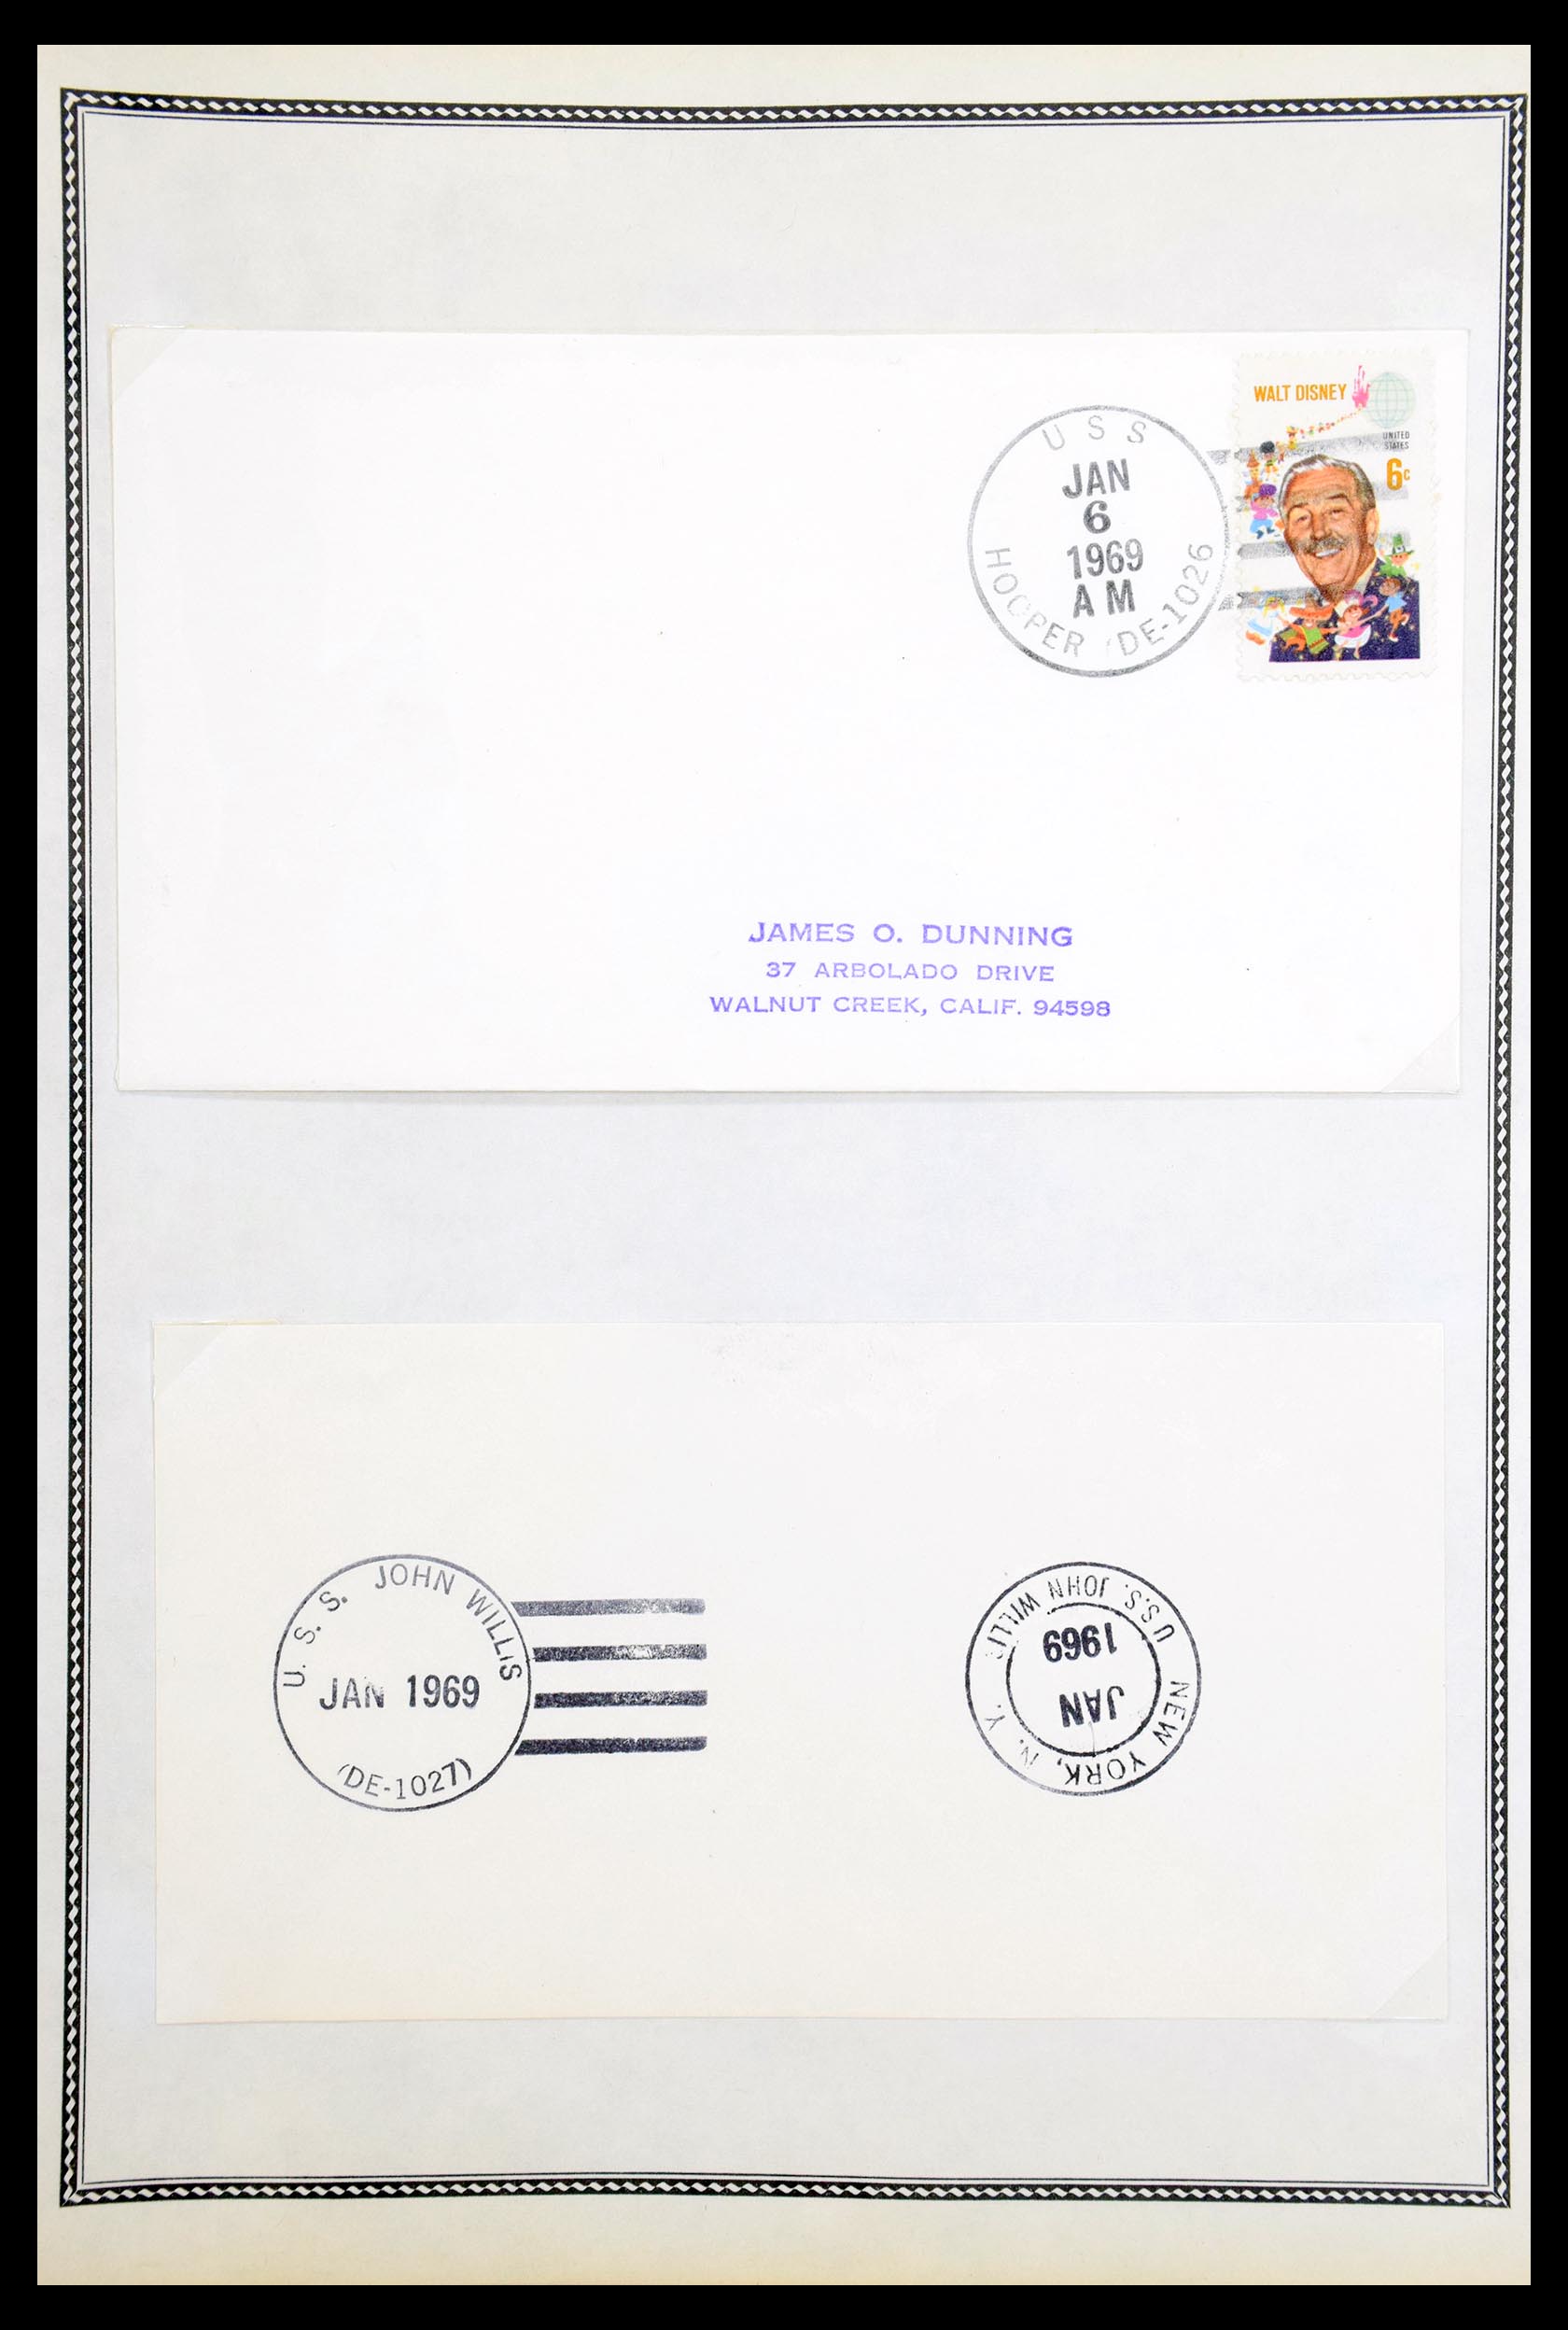 30341 074 - 30341 USA scheepspost brieven 1930-1970.